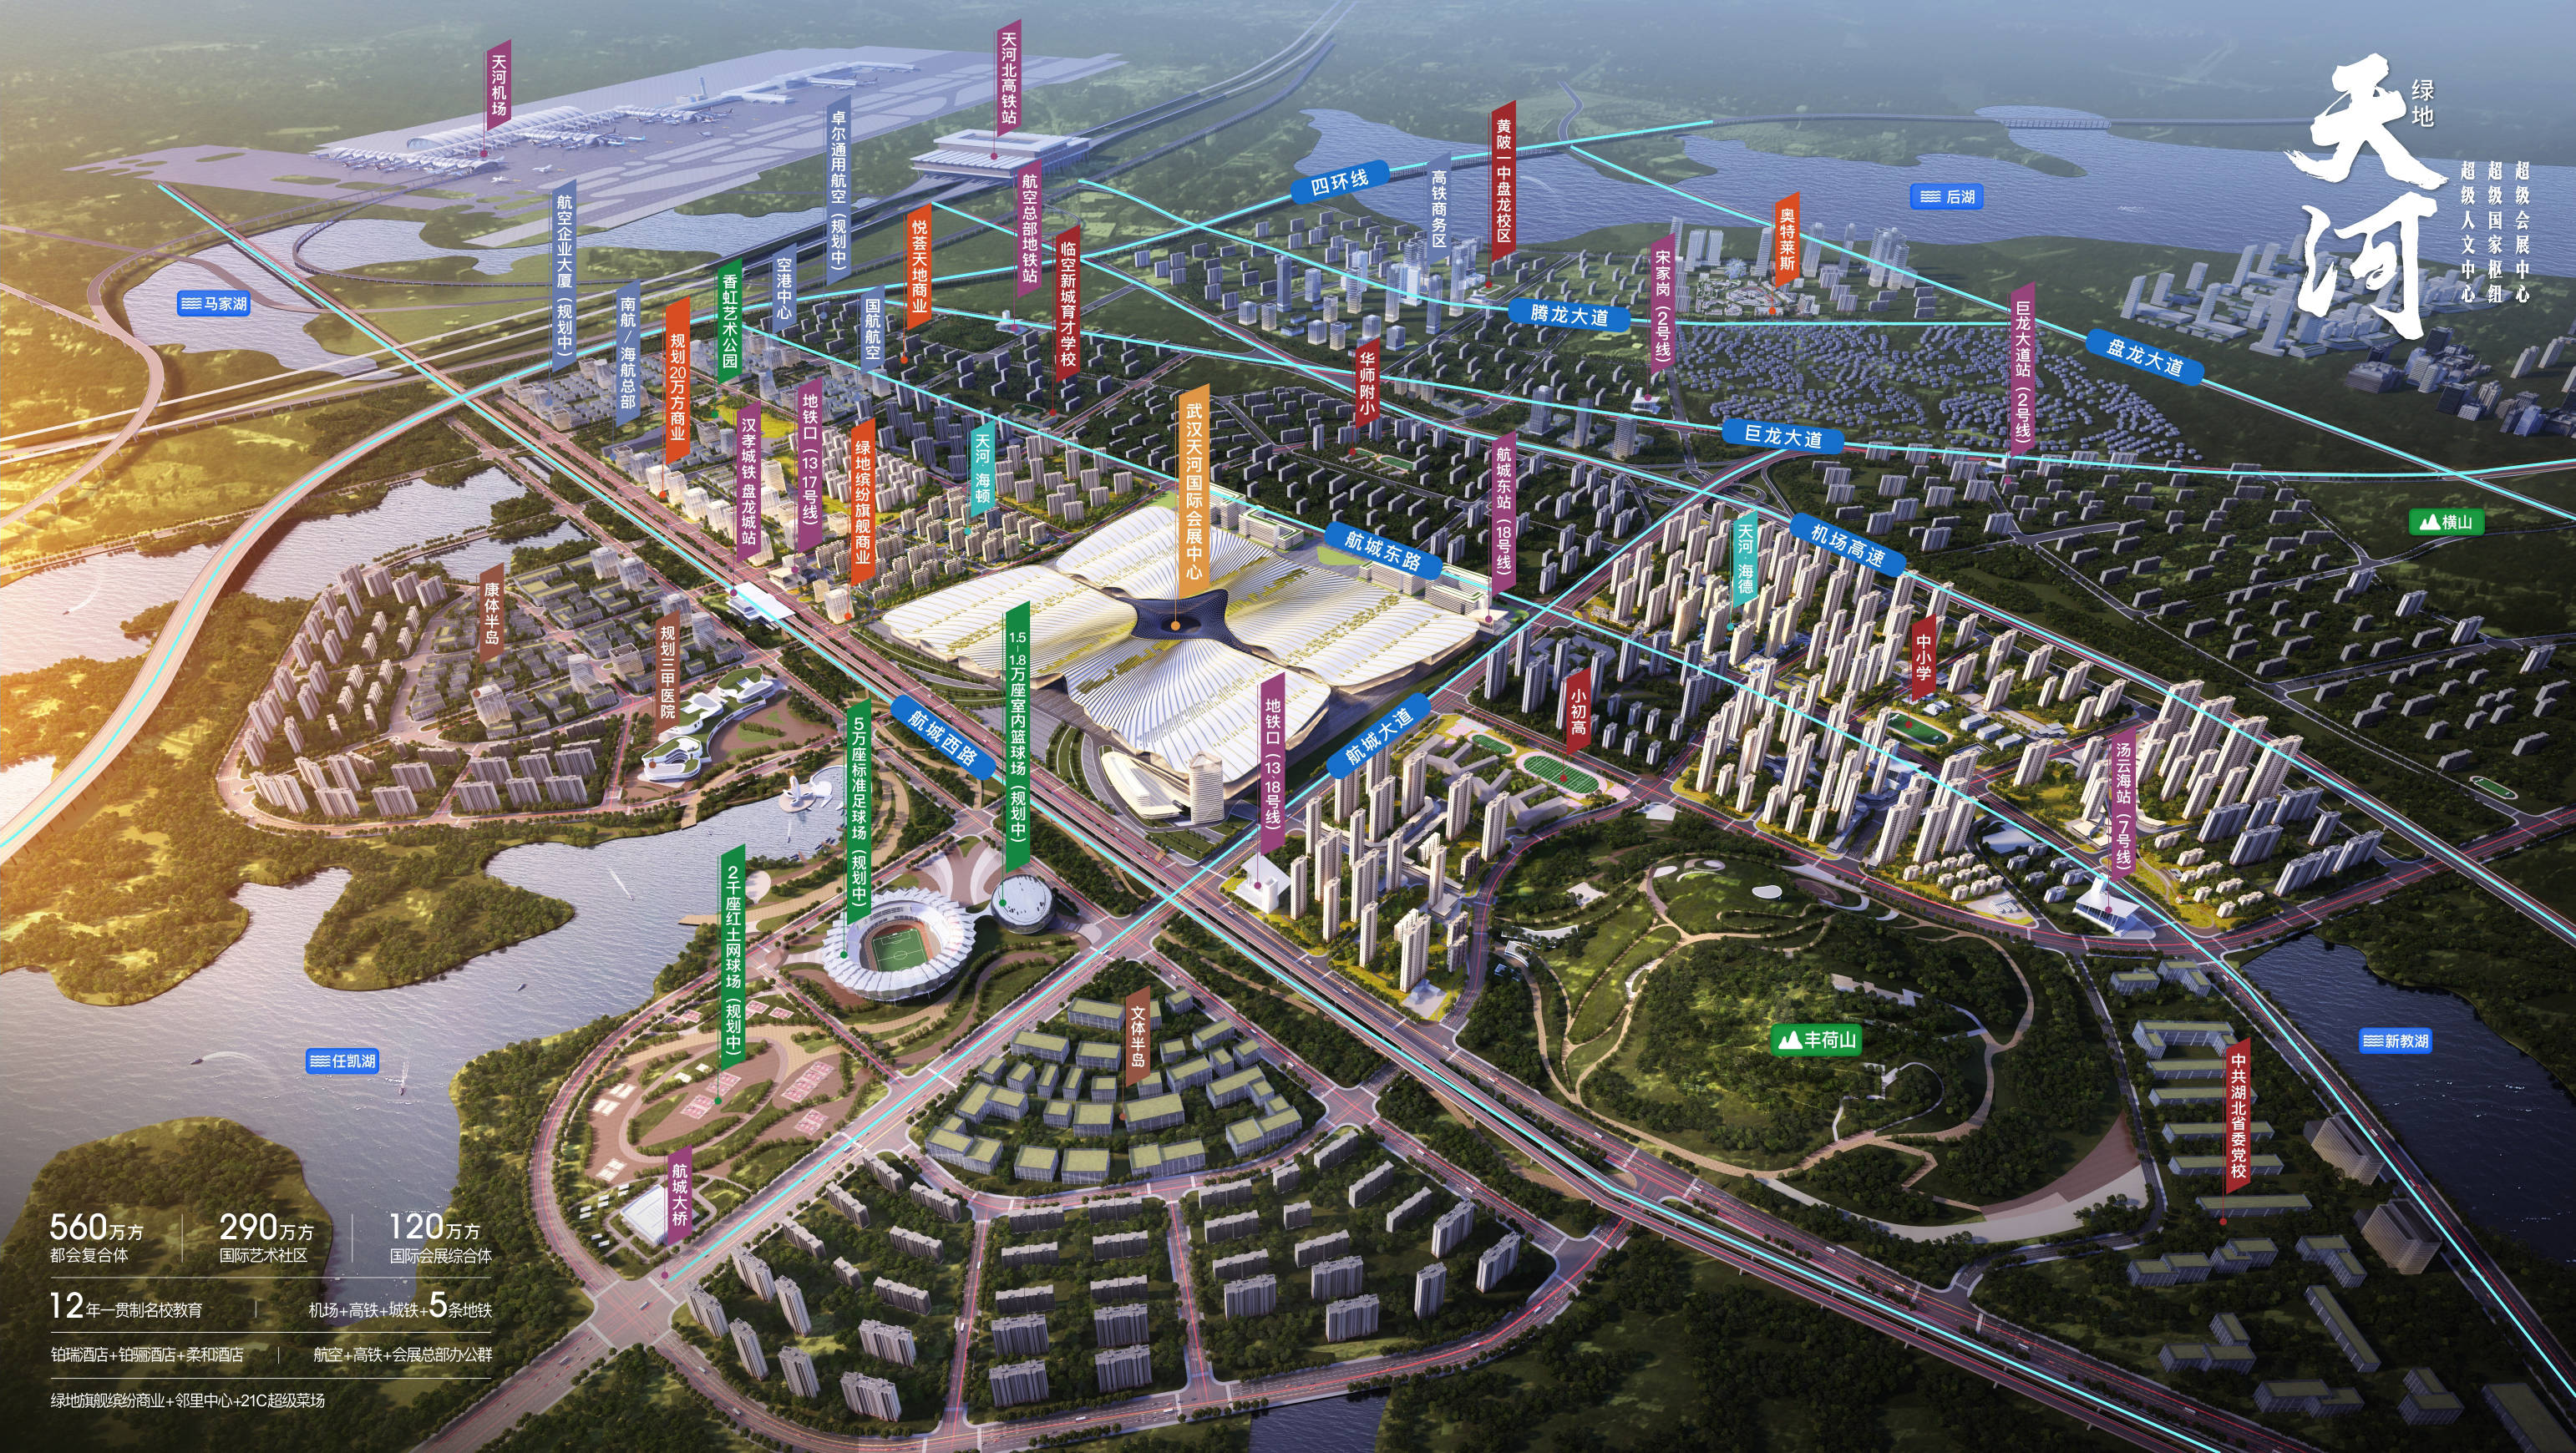 的一座武汉天河国际会展中心暨绿地天河国际会展城项目受到各方关注